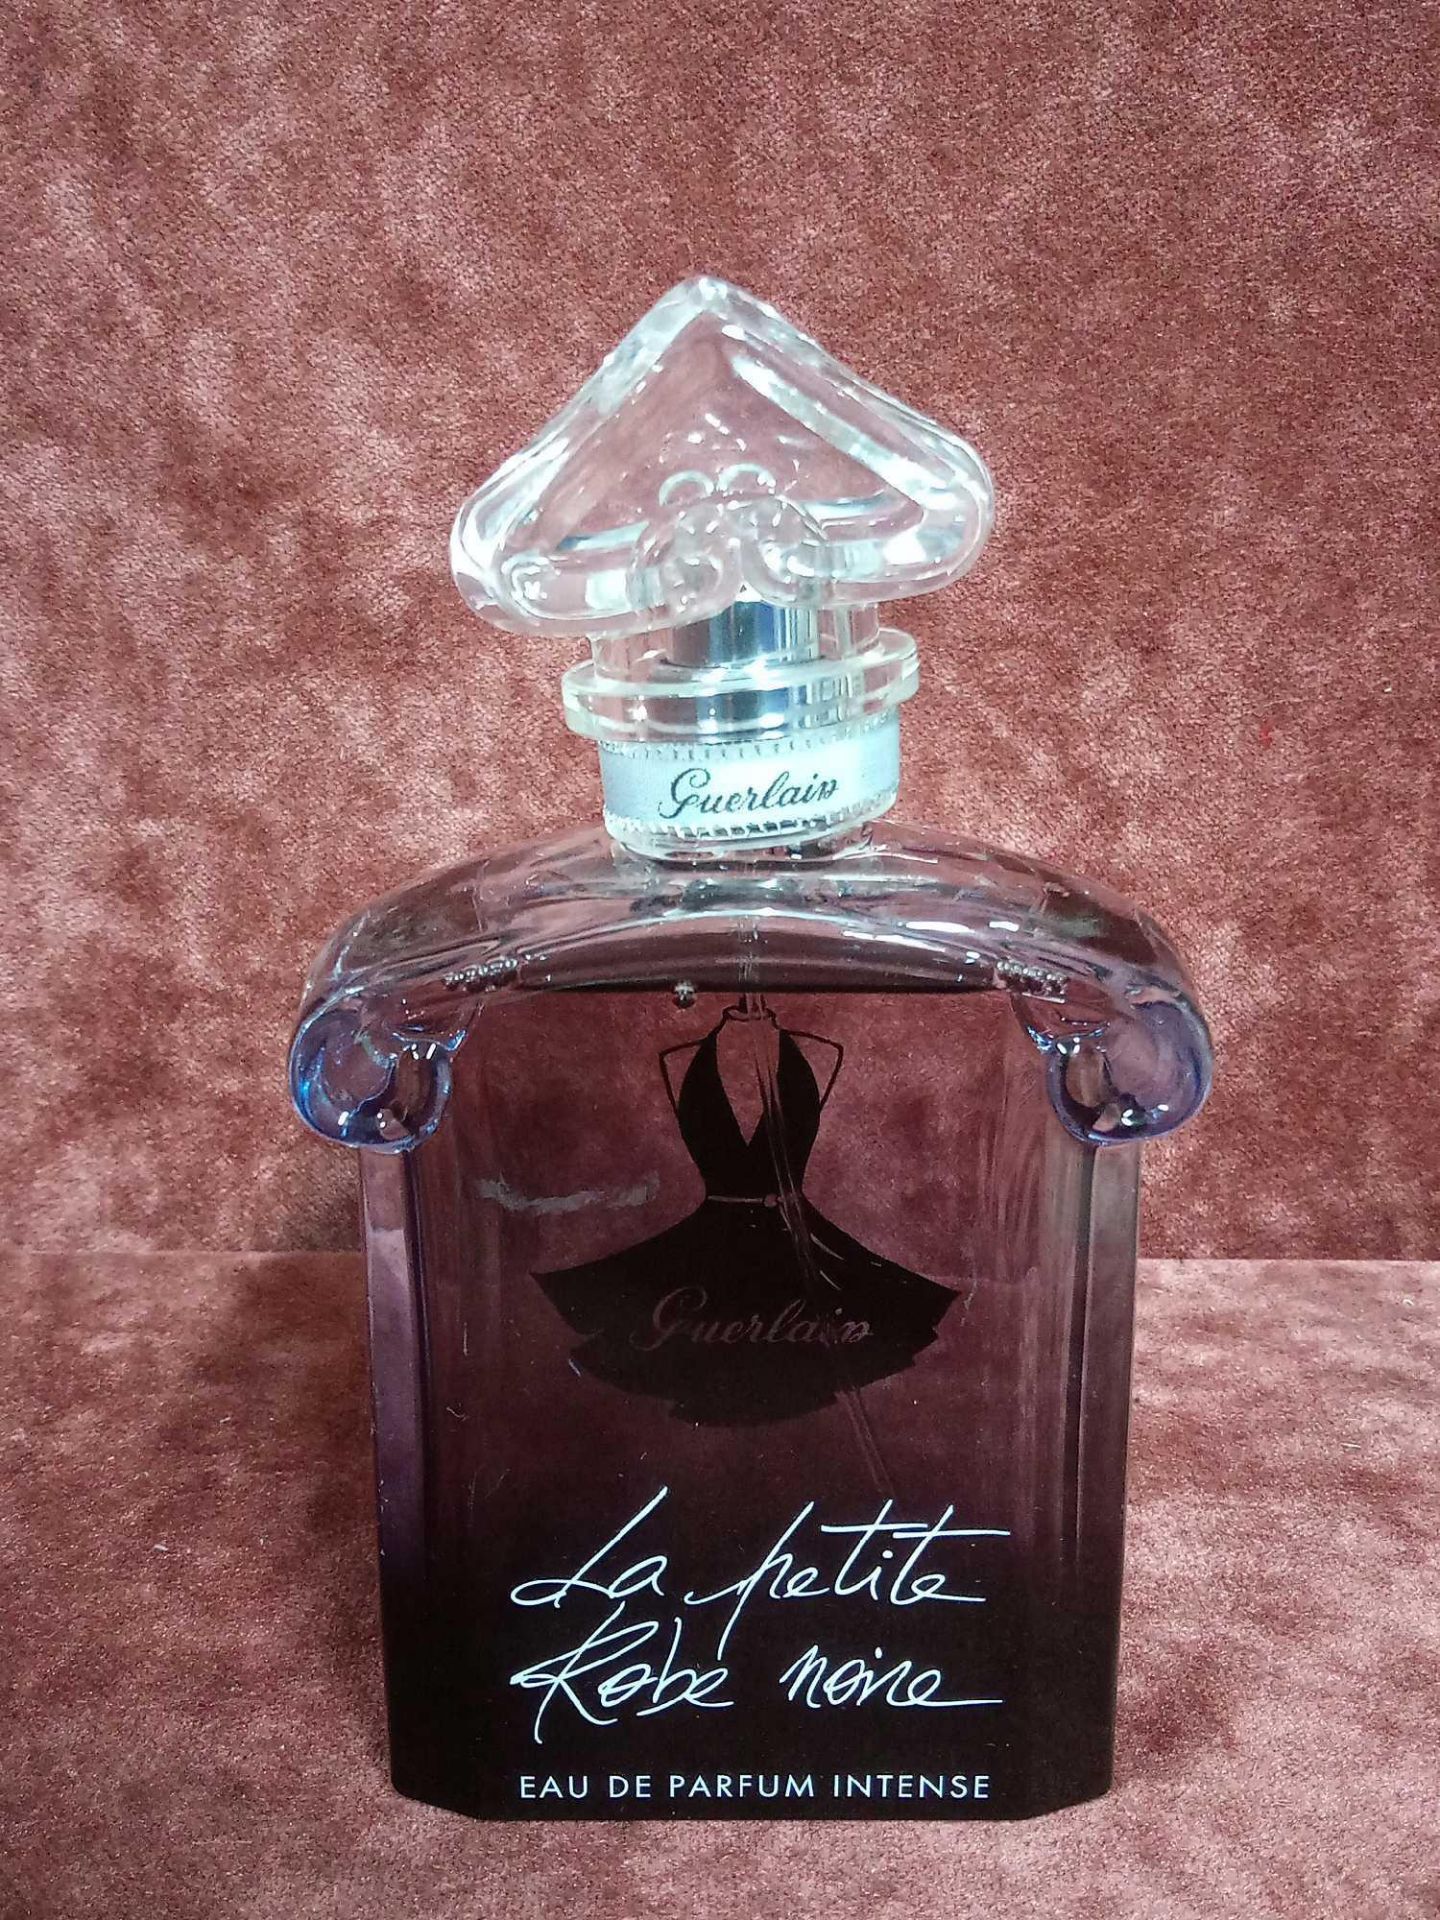 RRP £100 Unboxed 100Ml Tester Bottle Of Guerlain Paris La Petite Robe Noire Eau De Parfum Intense Sp